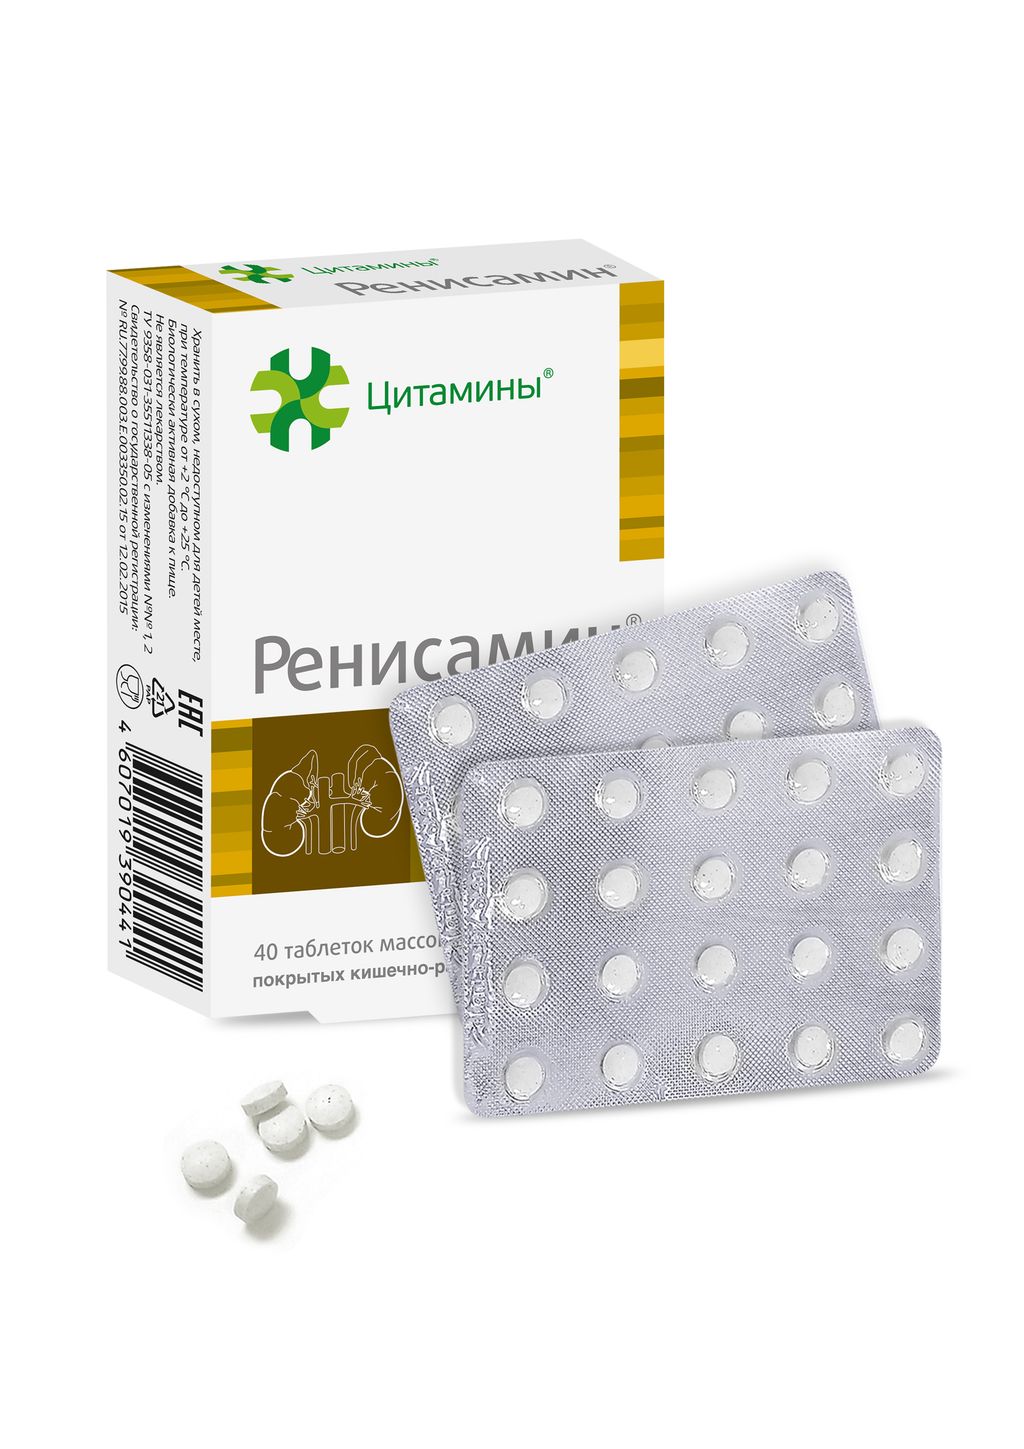 Ренисамин, 155 мг, таблетки, покрытые кишечнорастворимой оболочкой, 40 шт.